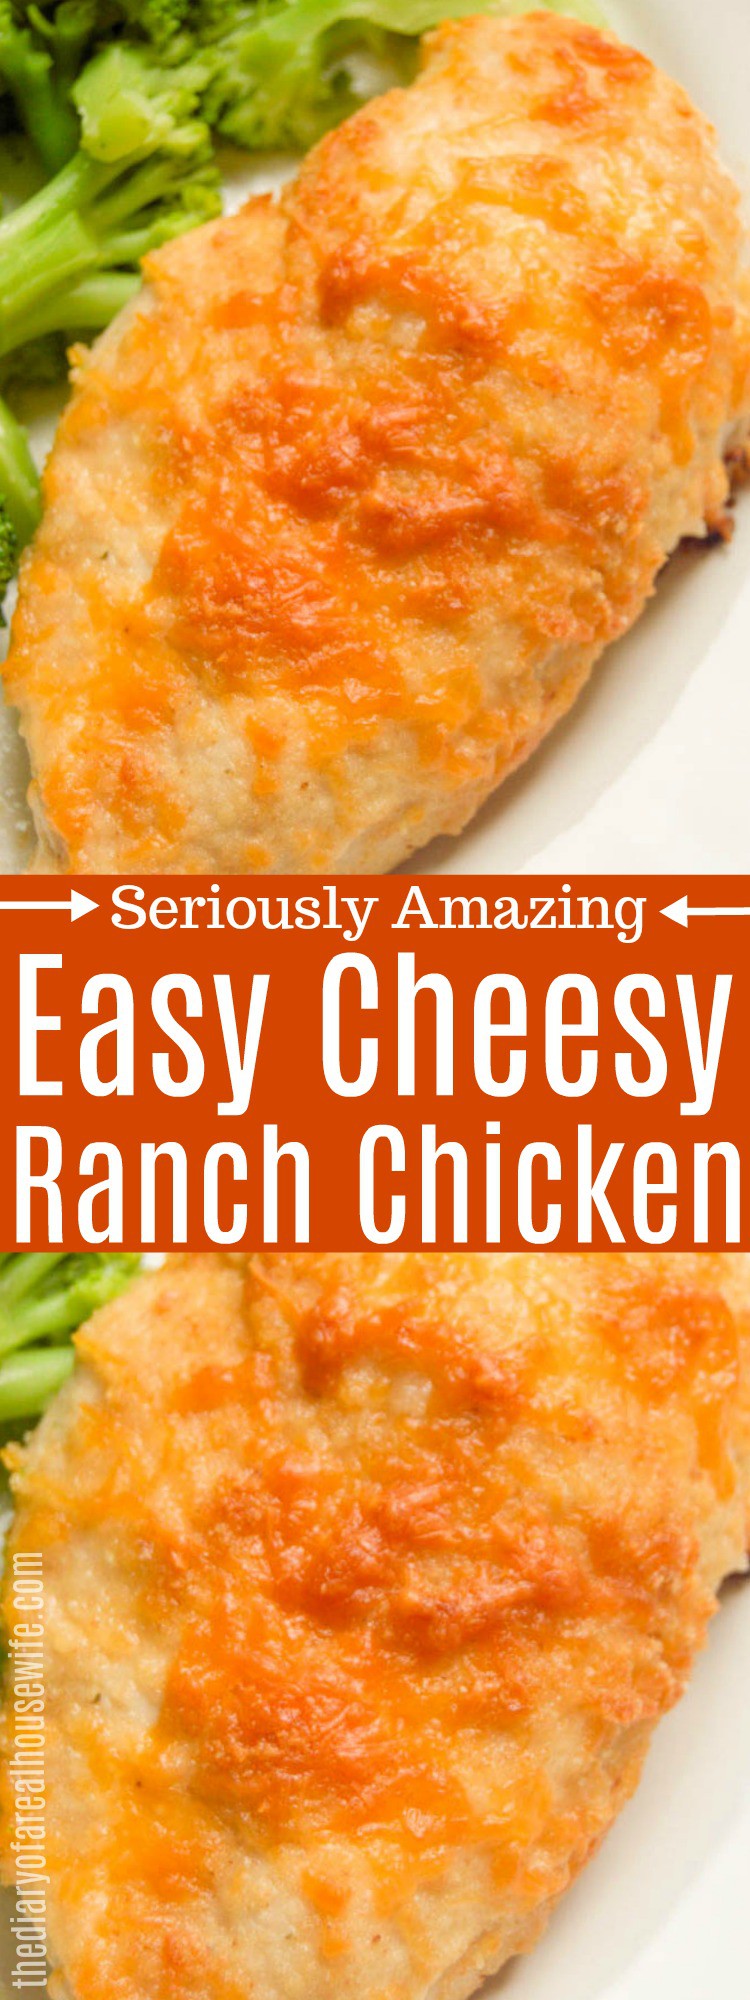 Cheesy Ranch Chicken